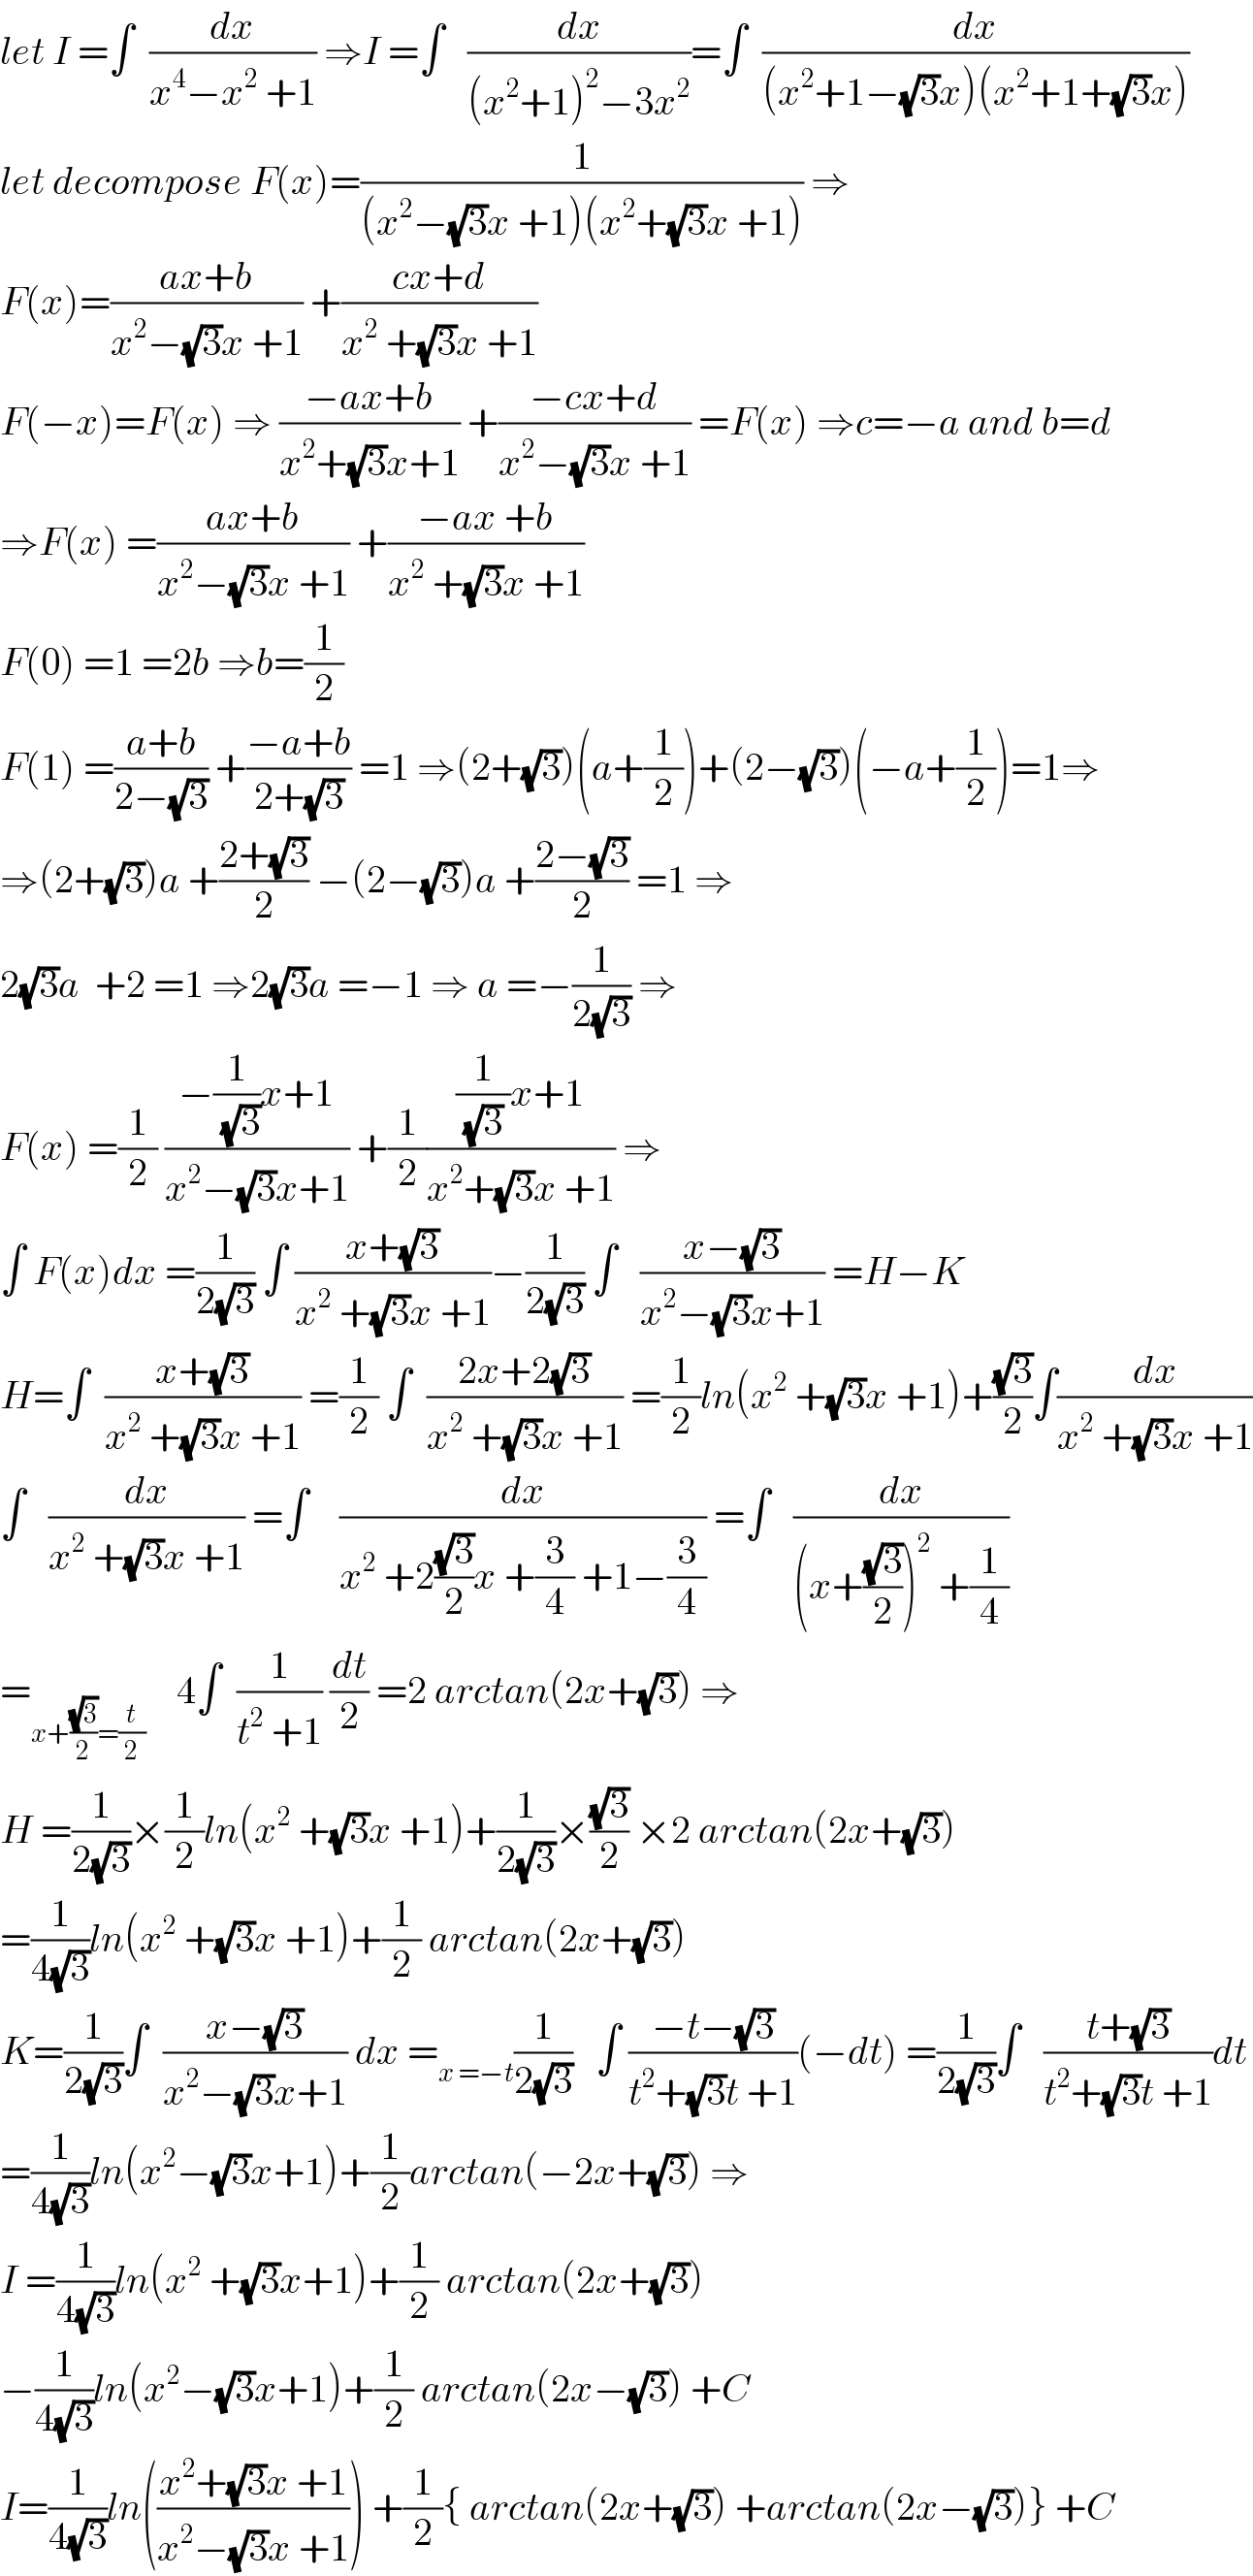 let I =∫  (dx/(x^4 −x^2  +1)) ⇒I =∫   (dx/((x^2 +1)^2 −3x^2 ))=∫  (dx/((x^2 +1−(√3)x)(x^2 +1+(√3)x)))  let decompose F(x)=(1/((x^2 −(√3)x +1)(x^2 +(√3)x +1))) ⇒  F(x)=((ax+b)/(x^2 −(√3)x +1)) +((cx+d)/(x^2  +(√3)x +1))  F(−x)=F(x) ⇒ ((−ax+b)/(x^2 +(√3)x+1)) +((−cx+d)/(x^2 −(√3)x +1)) =F(x) ⇒c=−a and b=d  ⇒F(x) =((ax+b)/(x^2 −(√3)x +1)) +((−ax +b)/(x^2  +(√3)x +1))  F(0) =1 =2b ⇒b=(1/2)  F(1) =((a+b)/(2−(√3))) +((−a+b)/(2+(√3))) =1 ⇒(2+(√3))(a+(1/2))+(2−(√3))(−a+(1/2))=1⇒  ⇒(2+(√3))a +((2+(√3))/2) −(2−(√3))a +((2−(√3))/2) =1 ⇒  2(√3)a  +2 =1 ⇒2(√3)a =−1 ⇒ a =−(1/(2(√3))) ⇒  F(x) =(1/2) ((−(1/(√3))x+1)/(x^2 −(√3)x+1)) +(1/2)(((1/((√3) ))x+1)/(x^2 +(√3)x +1)) ⇒  ∫ F(x)dx =(1/(2(√3))) ∫ ((x+(√3))/(x^2  +(√3)x +1))−(1/(2(√3))) ∫   ((x−(√3))/(x^2 −(√3)x+1)) =H−K  H=∫  ((x+(√3))/(x^2  +(√3)x +1)) =(1/2) ∫  ((2x+2(√3))/(x^2  +(√3)x +1)) =(1/2)ln(x^2  +(√3)x +1)+((√3)/2)∫(dx/(x^2  +(√3)x +1))  ∫   (dx/(x^2  +(√3)x +1)) =∫    (dx/(x^2  +2((√3)/2)x +(3/4) +1−(3/4))) =∫   (dx/((x+((√3)/2))^2  +(1/4)))  =_(x+((√3)/2)=(t/2))     4∫  (1/(t^2  +1)) (dt/2) =2 arctan(2x+(√3)) ⇒  H =(1/(2(√3)))×(1/2)ln(x^2  +(√3)x +1)+(1/(2(√3)))×((√3)/2) ×2 arctan(2x+(√3))  =(1/(4(√3)))ln(x^2  +(√3)x +1)+(1/2) arctan(2x+(√3))  K=(1/(2(√3)))∫  ((x−(√3))/(x^2 −(√3)x+1)) dx =_(x =−t) (1/(2(√3)))   ∫ ((−t−(√3))/(t^2 +(√3)t +1))(−dt) =(1/(2(√3)))∫   ((t+(√3))/(t^2 +(√3)t +1))dt  =(1/(4(√3)))ln(x^2 −(√3)x+1)+(1/2)arctan(−2x+(√3)) ⇒  I =(1/(4(√3)))ln(x^2  +(√3)x+1)+(1/2) arctan(2x+(√3))  −(1/(4(√3)))ln(x^2 −(√3)x+1)+(1/2) arctan(2x−(√3)) +C  I=(1/(4(√3)))ln(((x^2 +(√3)x +1)/(x^2 −(√3)x +1))) +(1/2){ arctan(2x+(√3)) +arctan(2x−(√3))} +C  